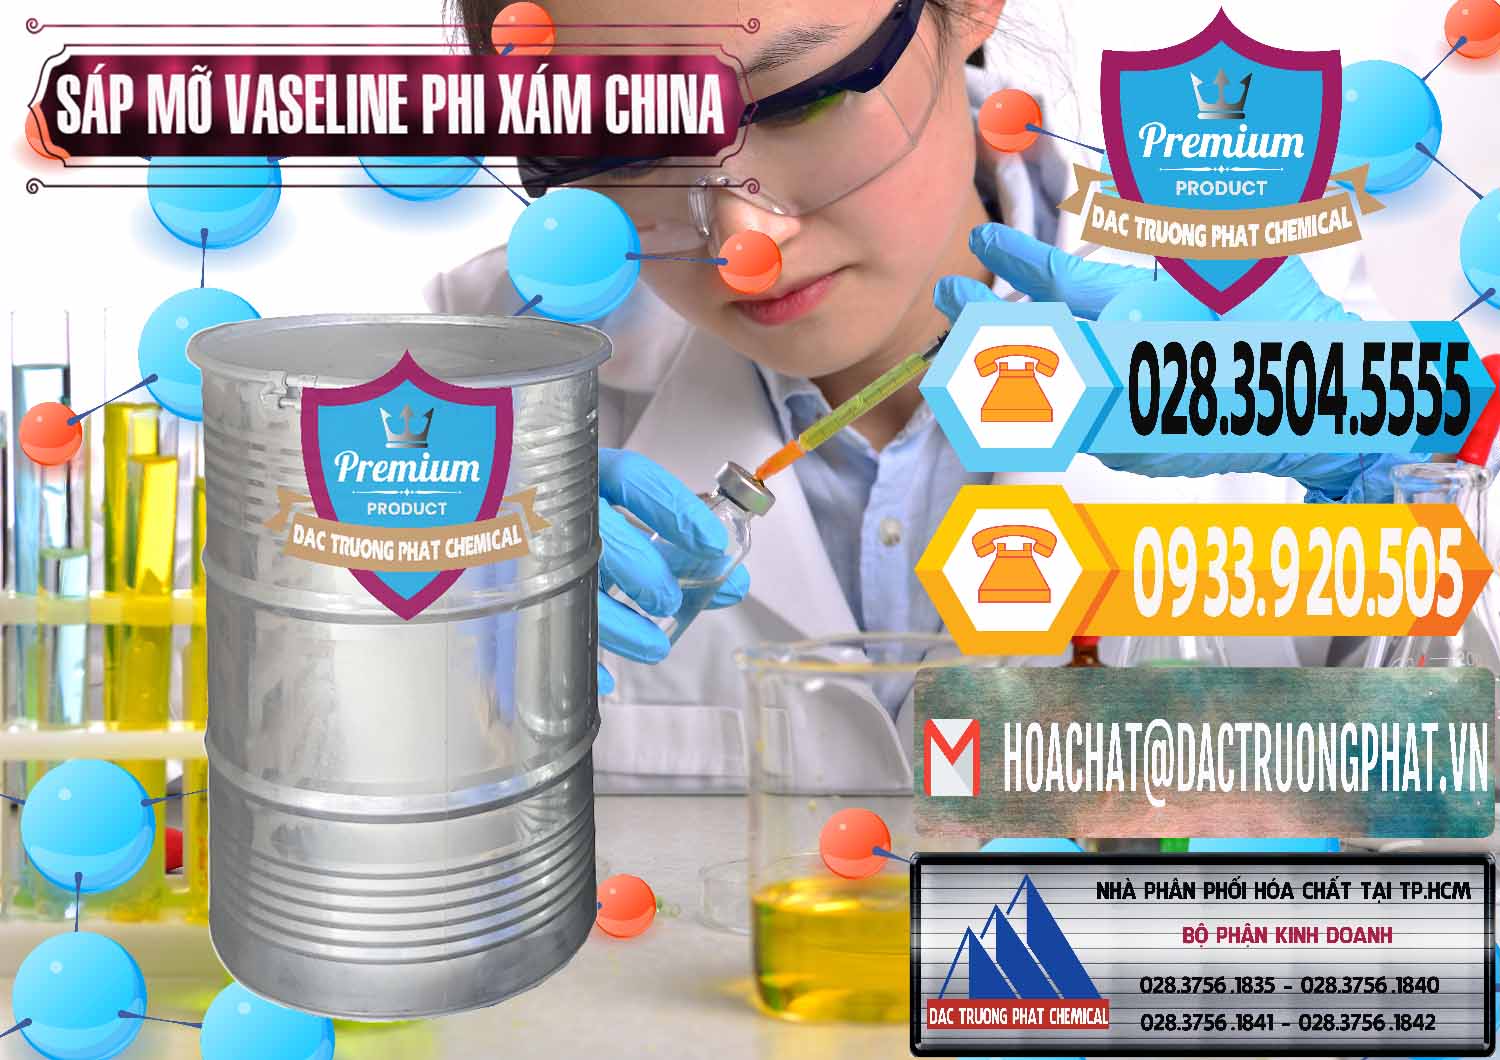 Nhà cung ứng - bán Sáp Mỡ Vaseline Phi Xám Trung Quốc China - 0291 - Công ty chuyên phân phối và cung ứng hóa chất tại TP.HCM - hoachattayrua.net